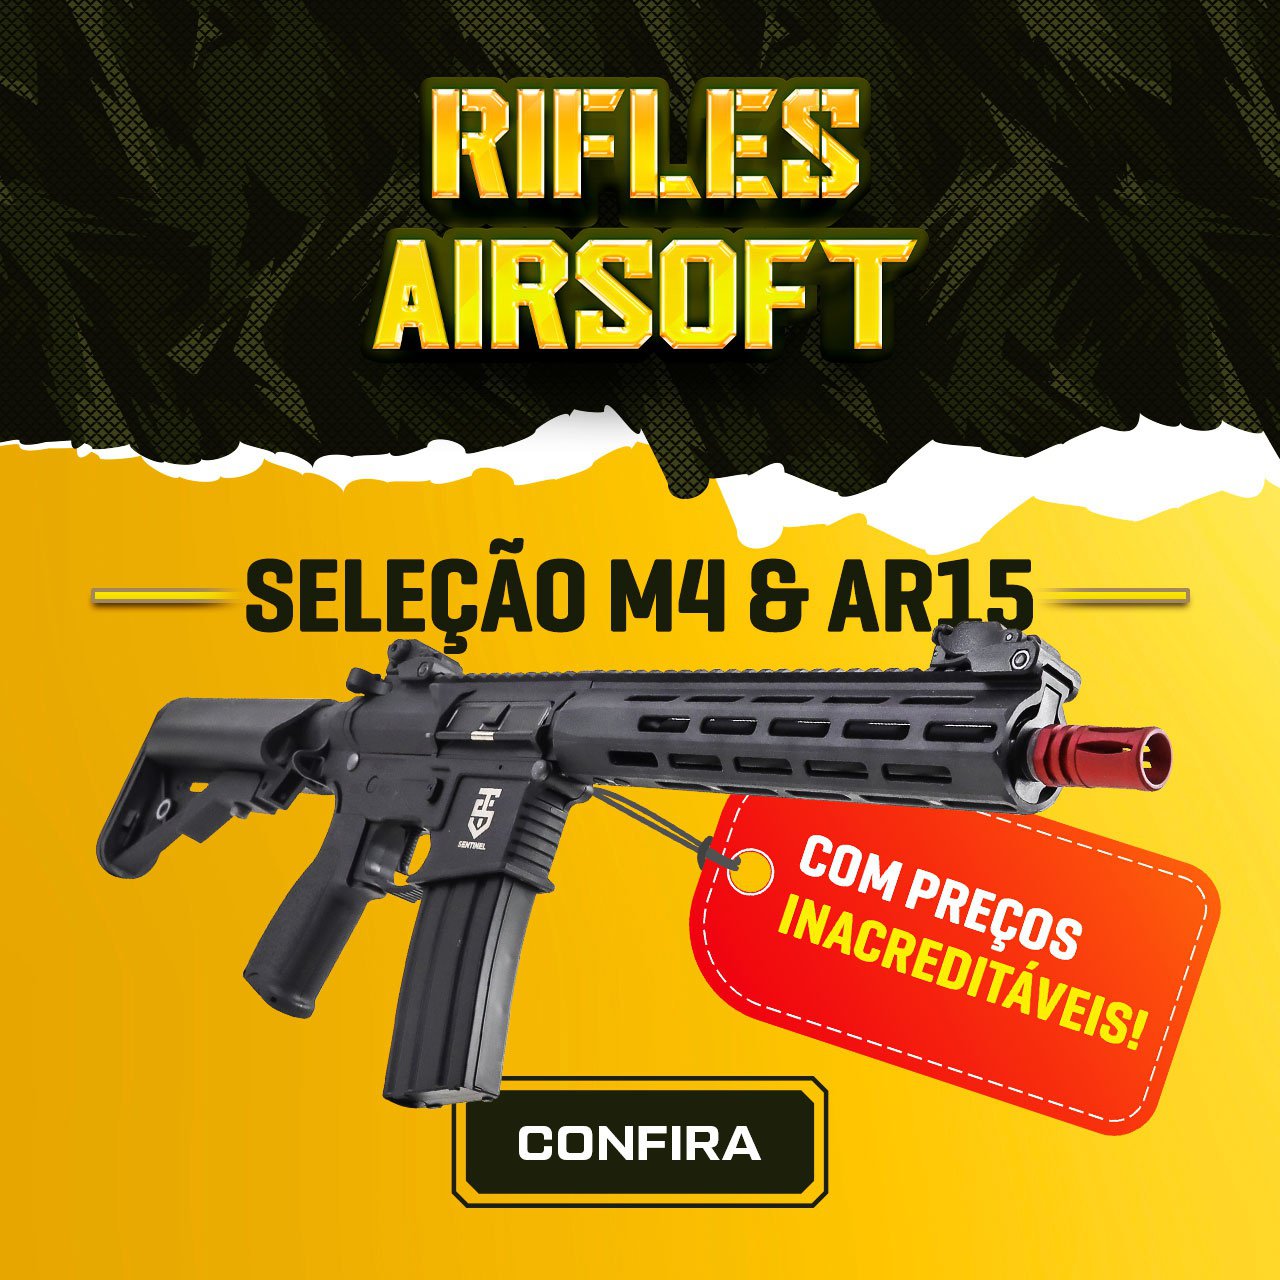 Rifles Airsoft - Seleção M4 & AR15, com preços inacreditáveis!